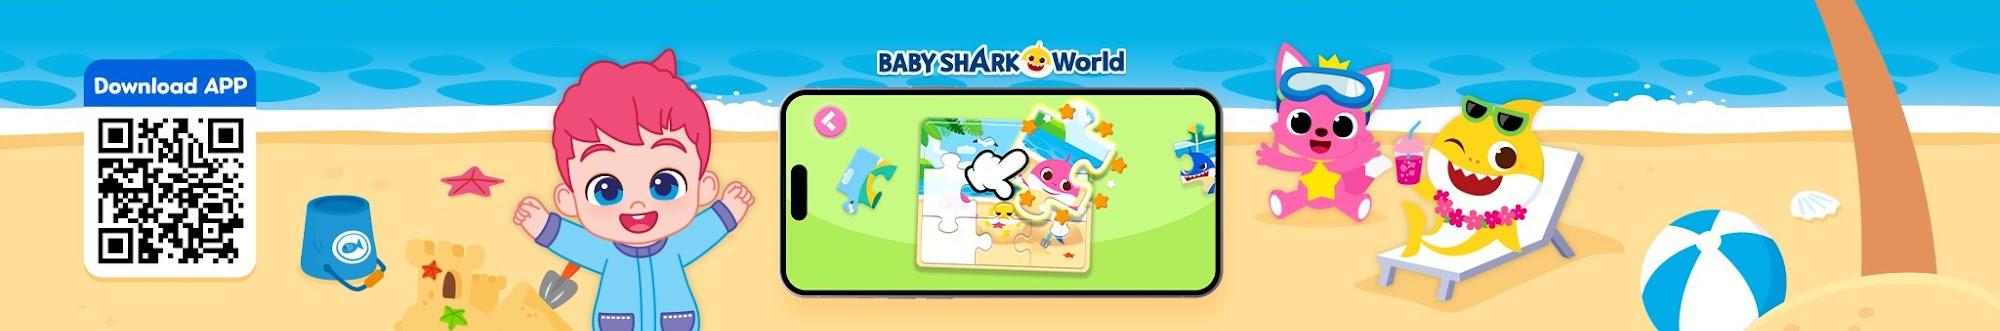 พิ้งฟอง เบบี้ชาร์ค(Pinkfong Baby Shark) - เพลงเด็ก